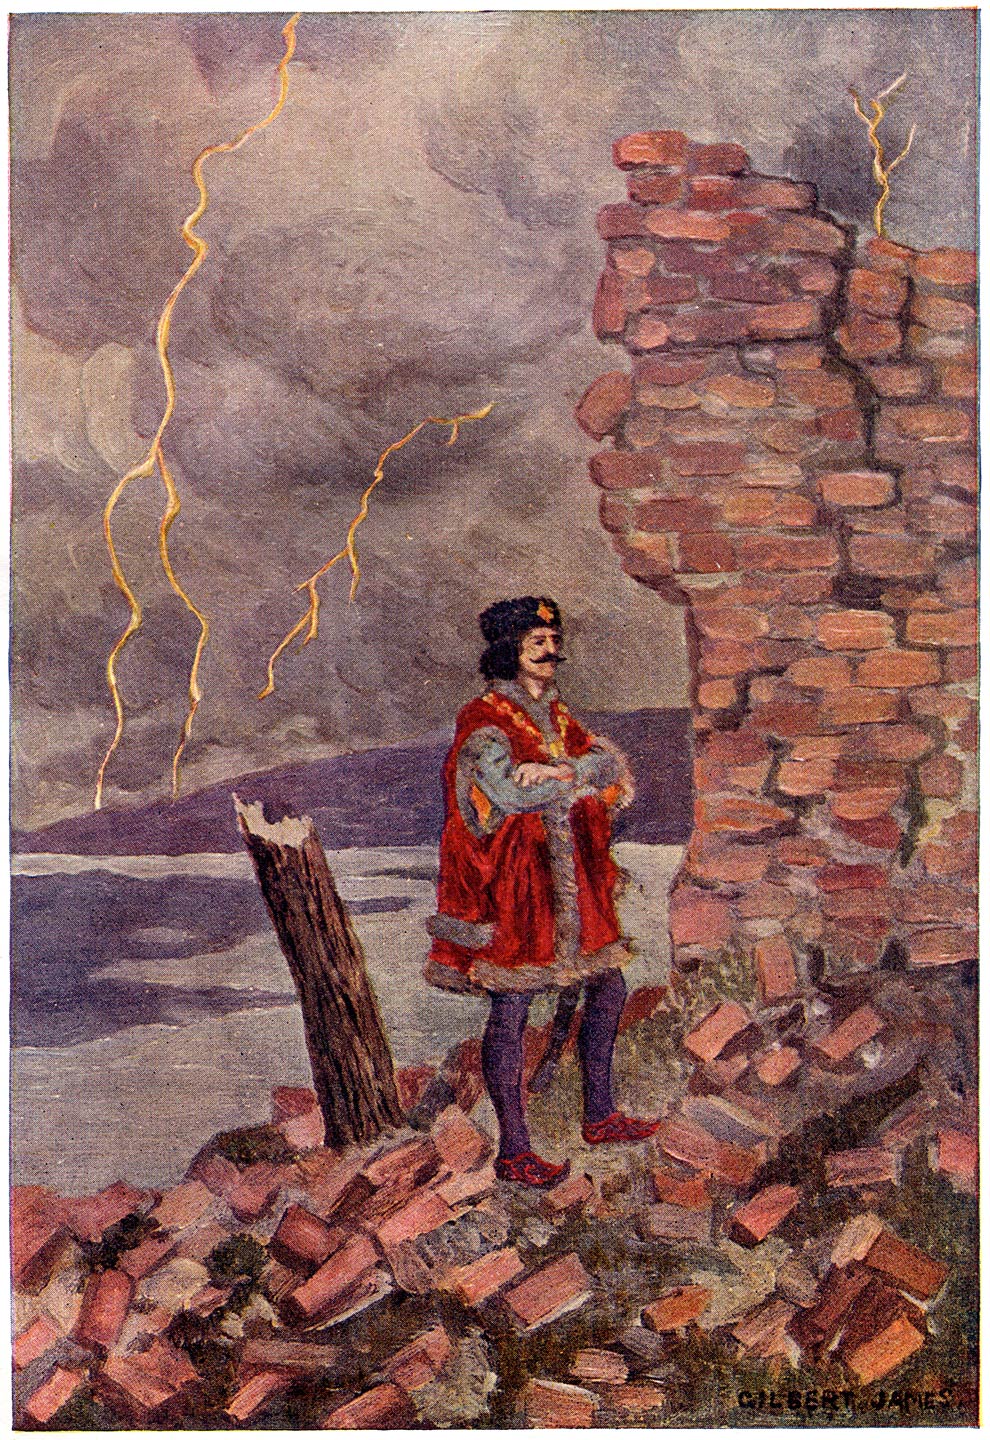 Toen het kasteel ineenstortte, werd Maximus door den vallenden toren geraakt, die hem echter niet ernstig kwetste